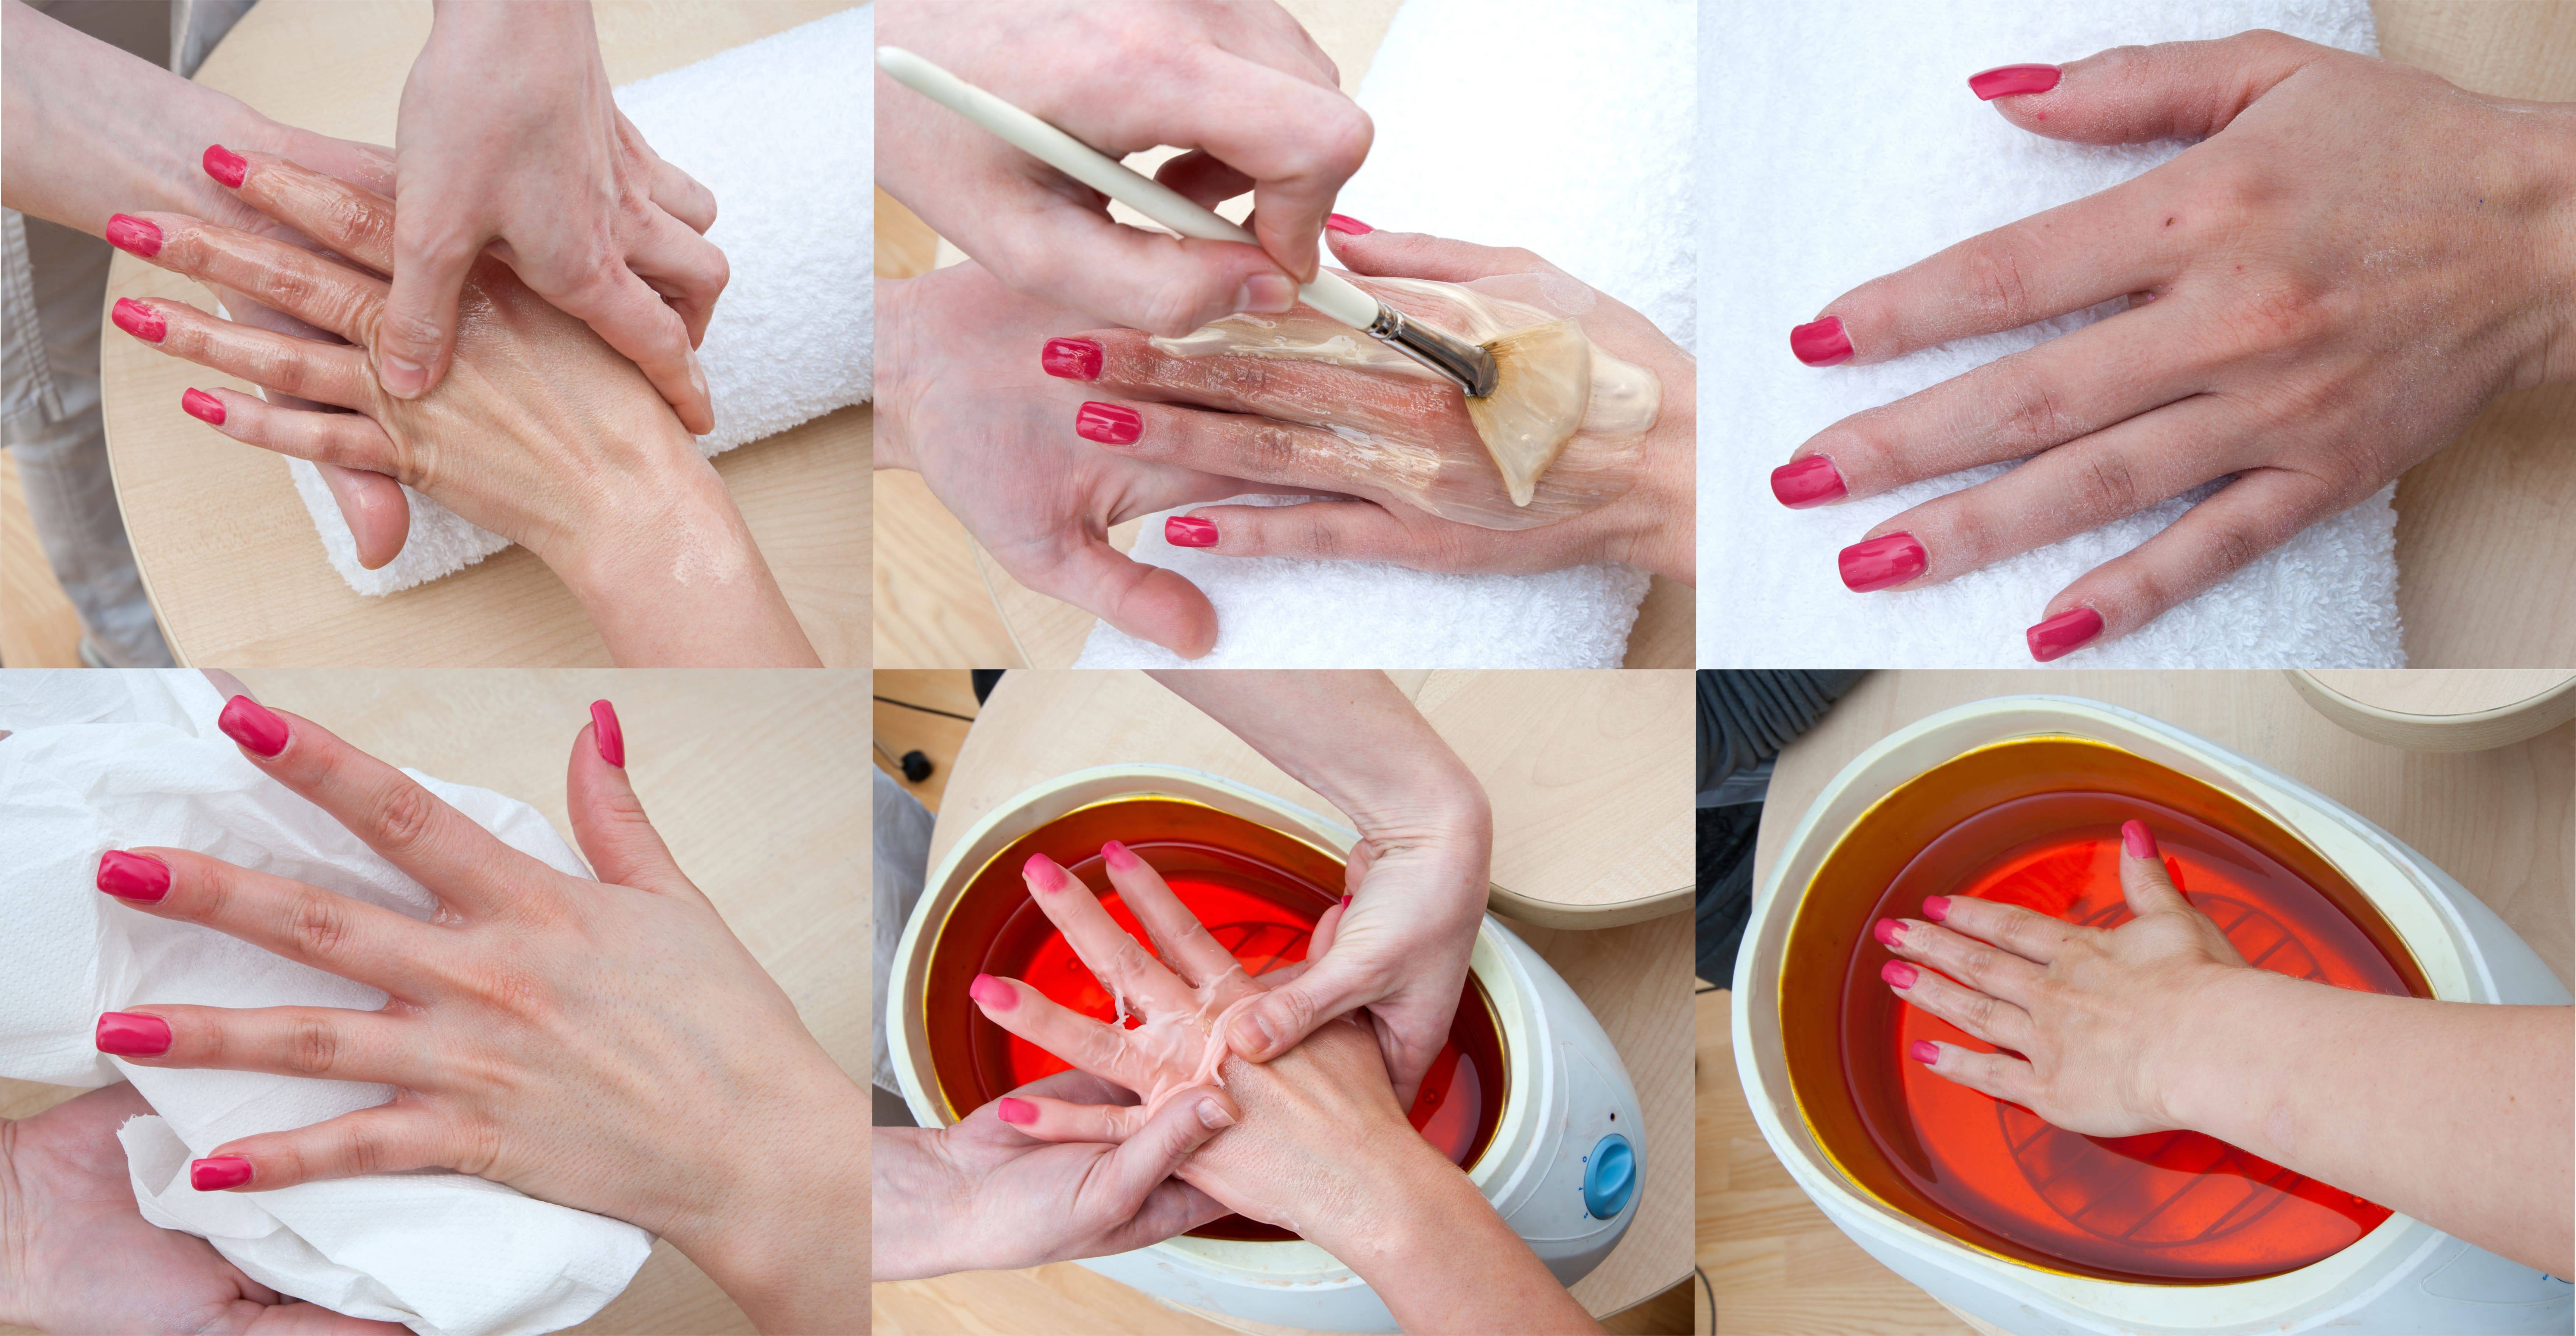 Парафинотерапия рук - экстренное восстановление кожи и ногтей